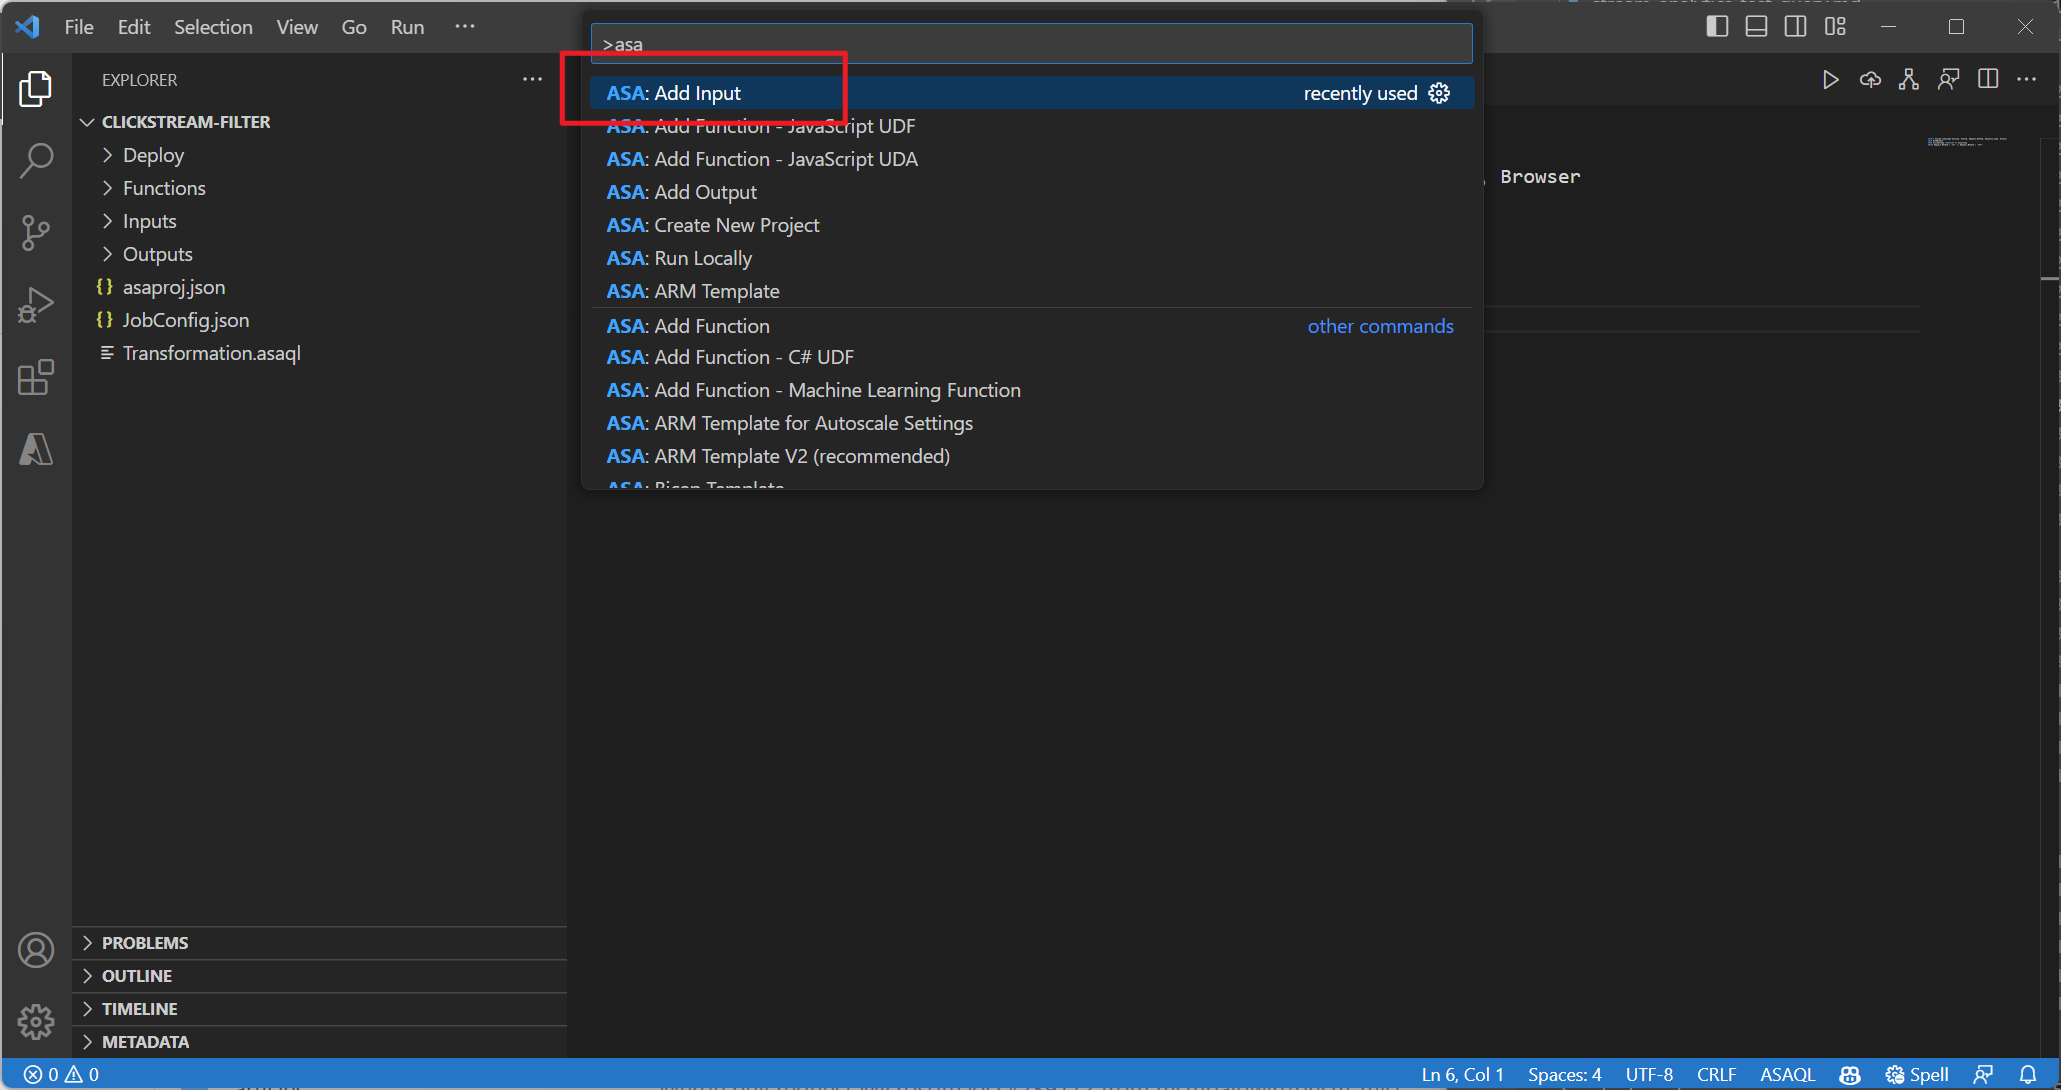 Captura de pantalla de agregar una entrada mediante la paleta de comandos de la extensión de VSCode.